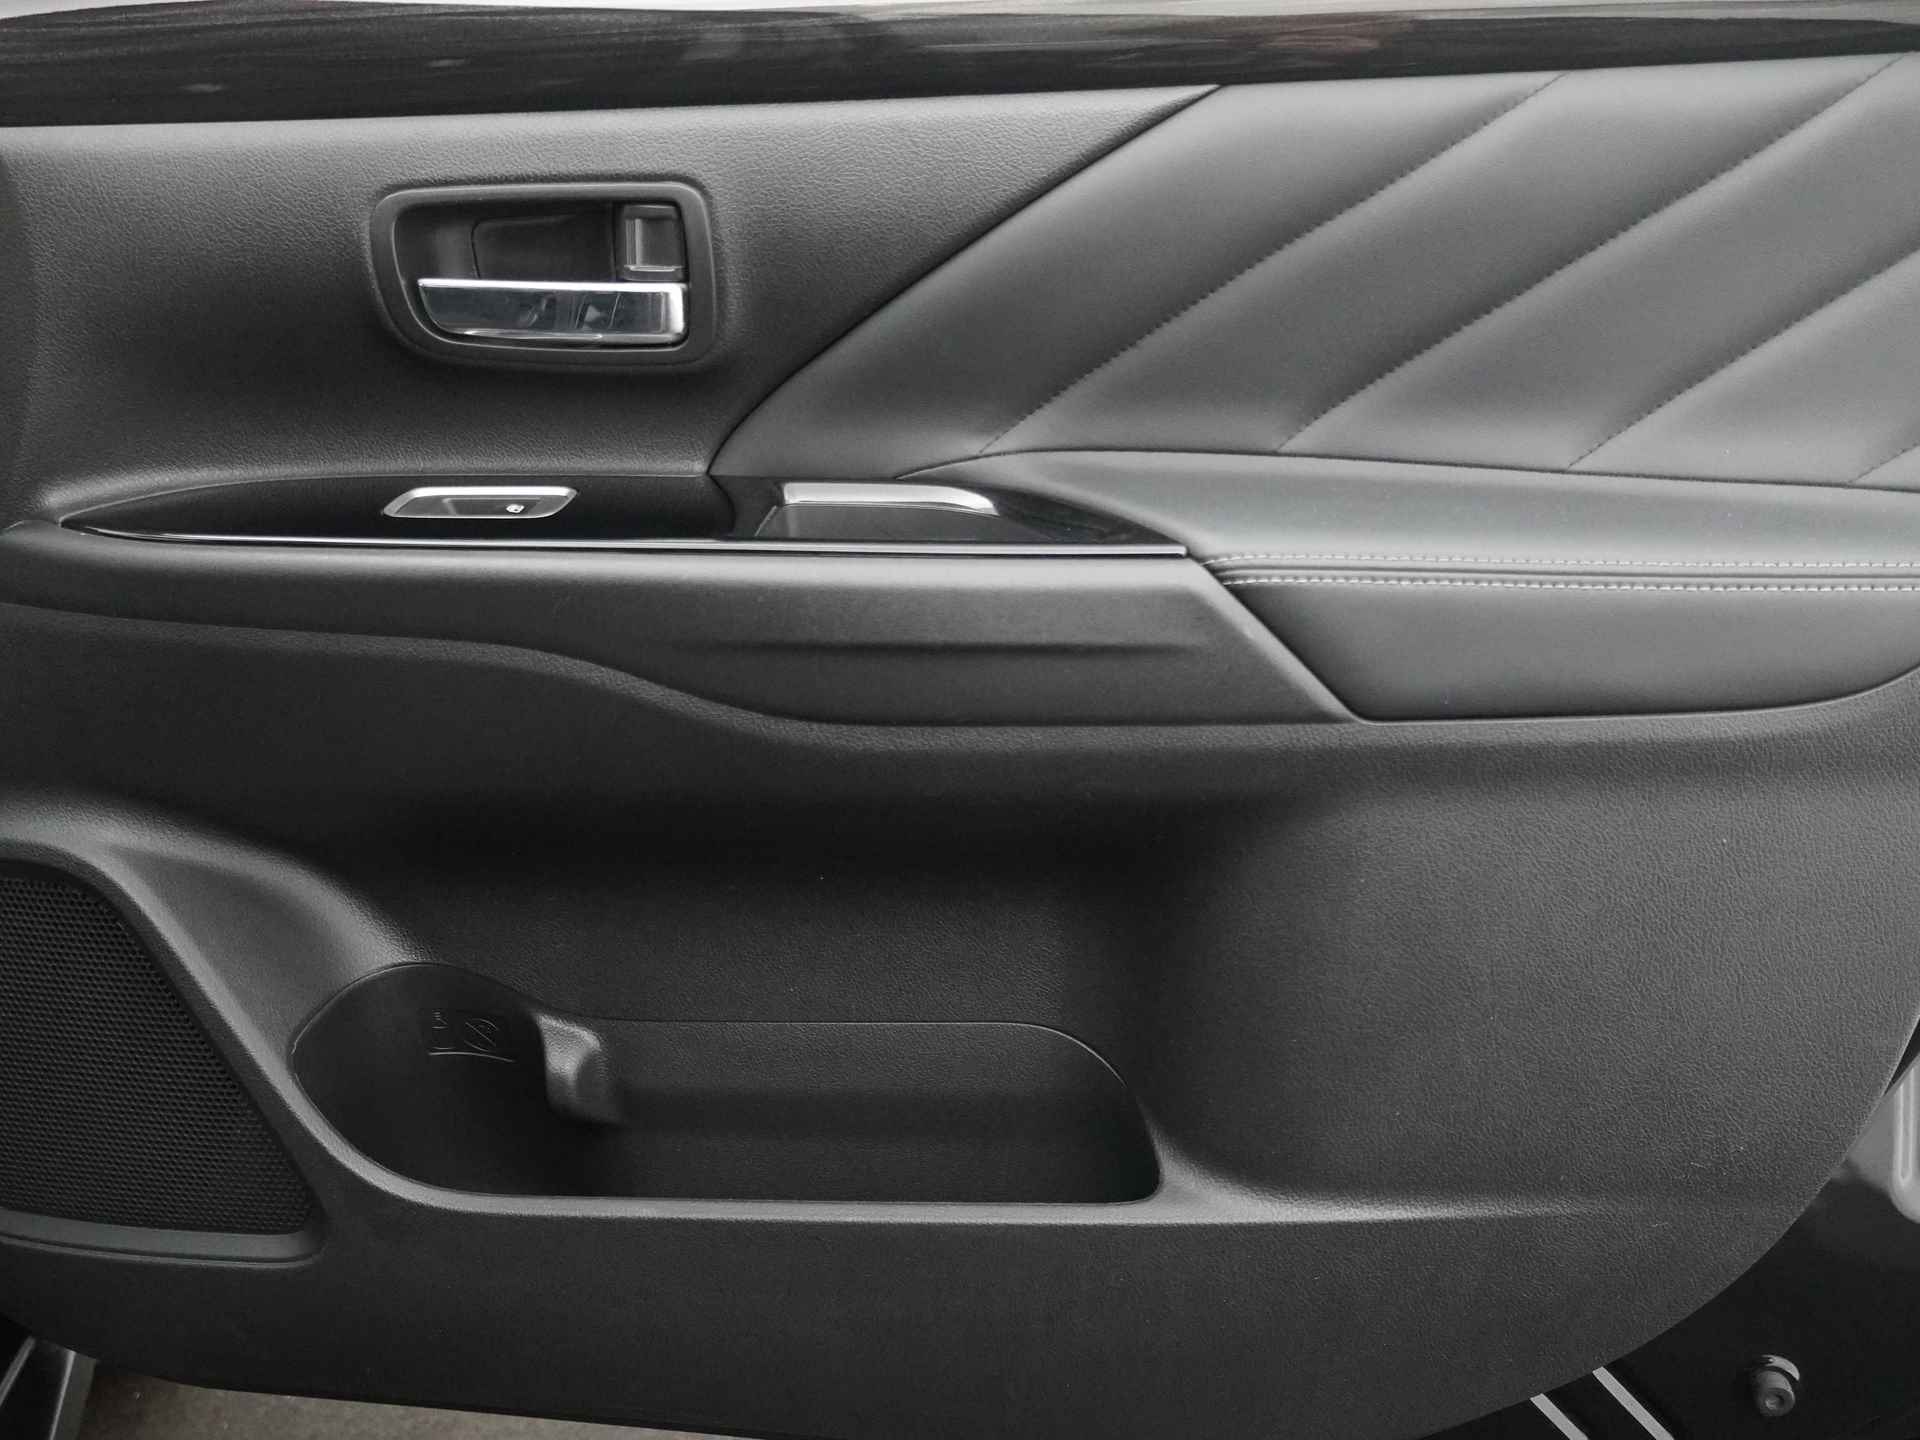 Mitsubishi Outlander 2.0 Instyle+ 4WD - Schuifkanteldak - Lederen bekleding - Voorraam verwarming - Apple CarPlay / Android Auto - Elektrische achterklep - 12 Maanden bovag garantie - 45/48